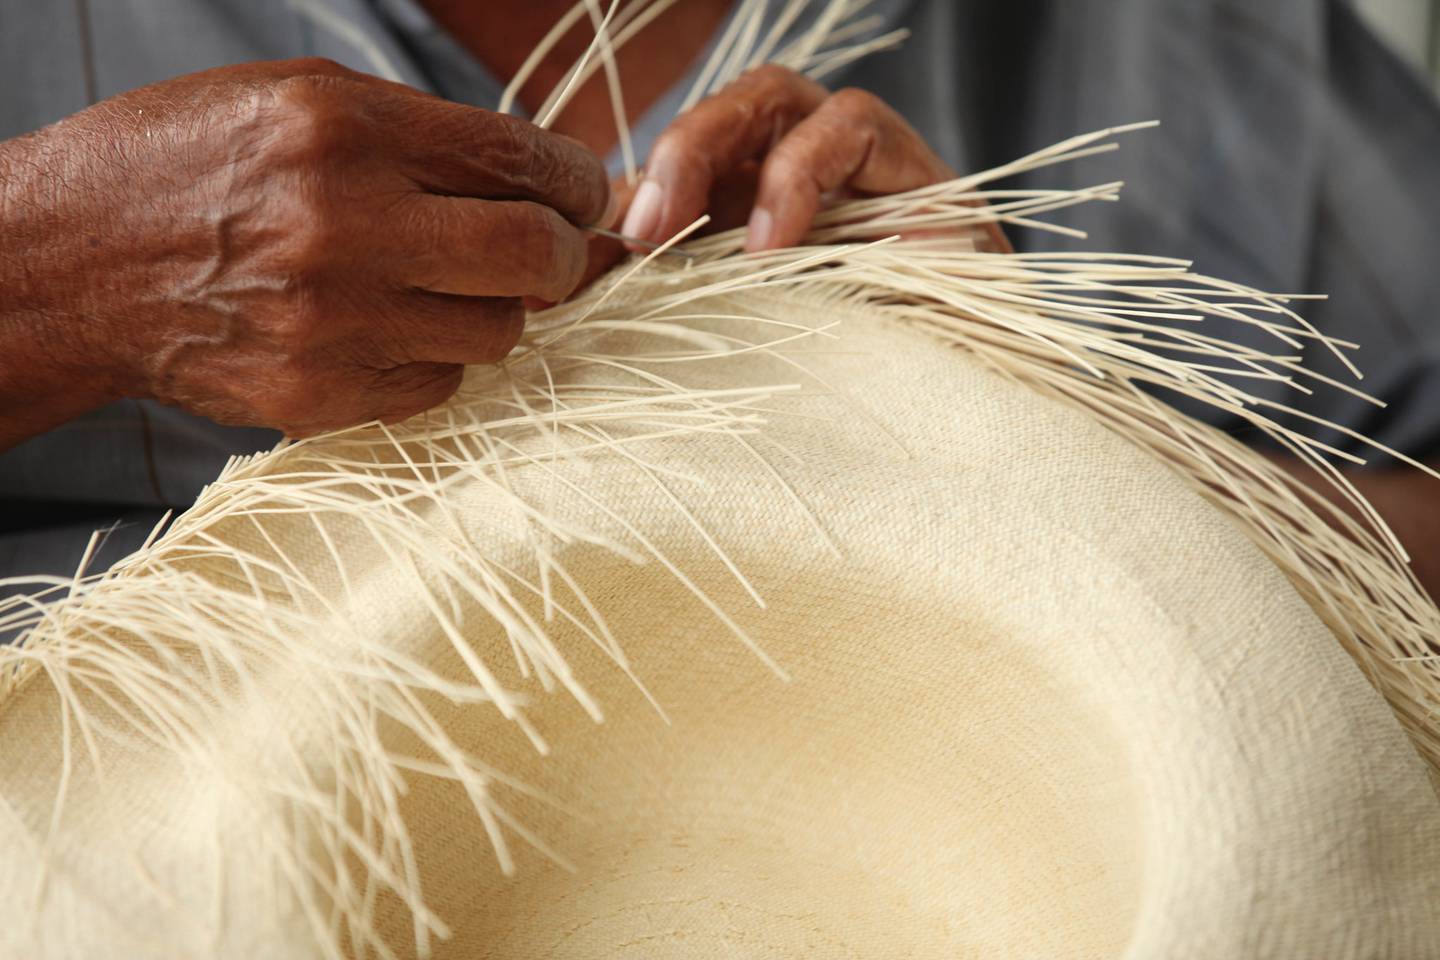 Los sombreros de paja toquilla son tejidos a mano por artesanos del país.dfd